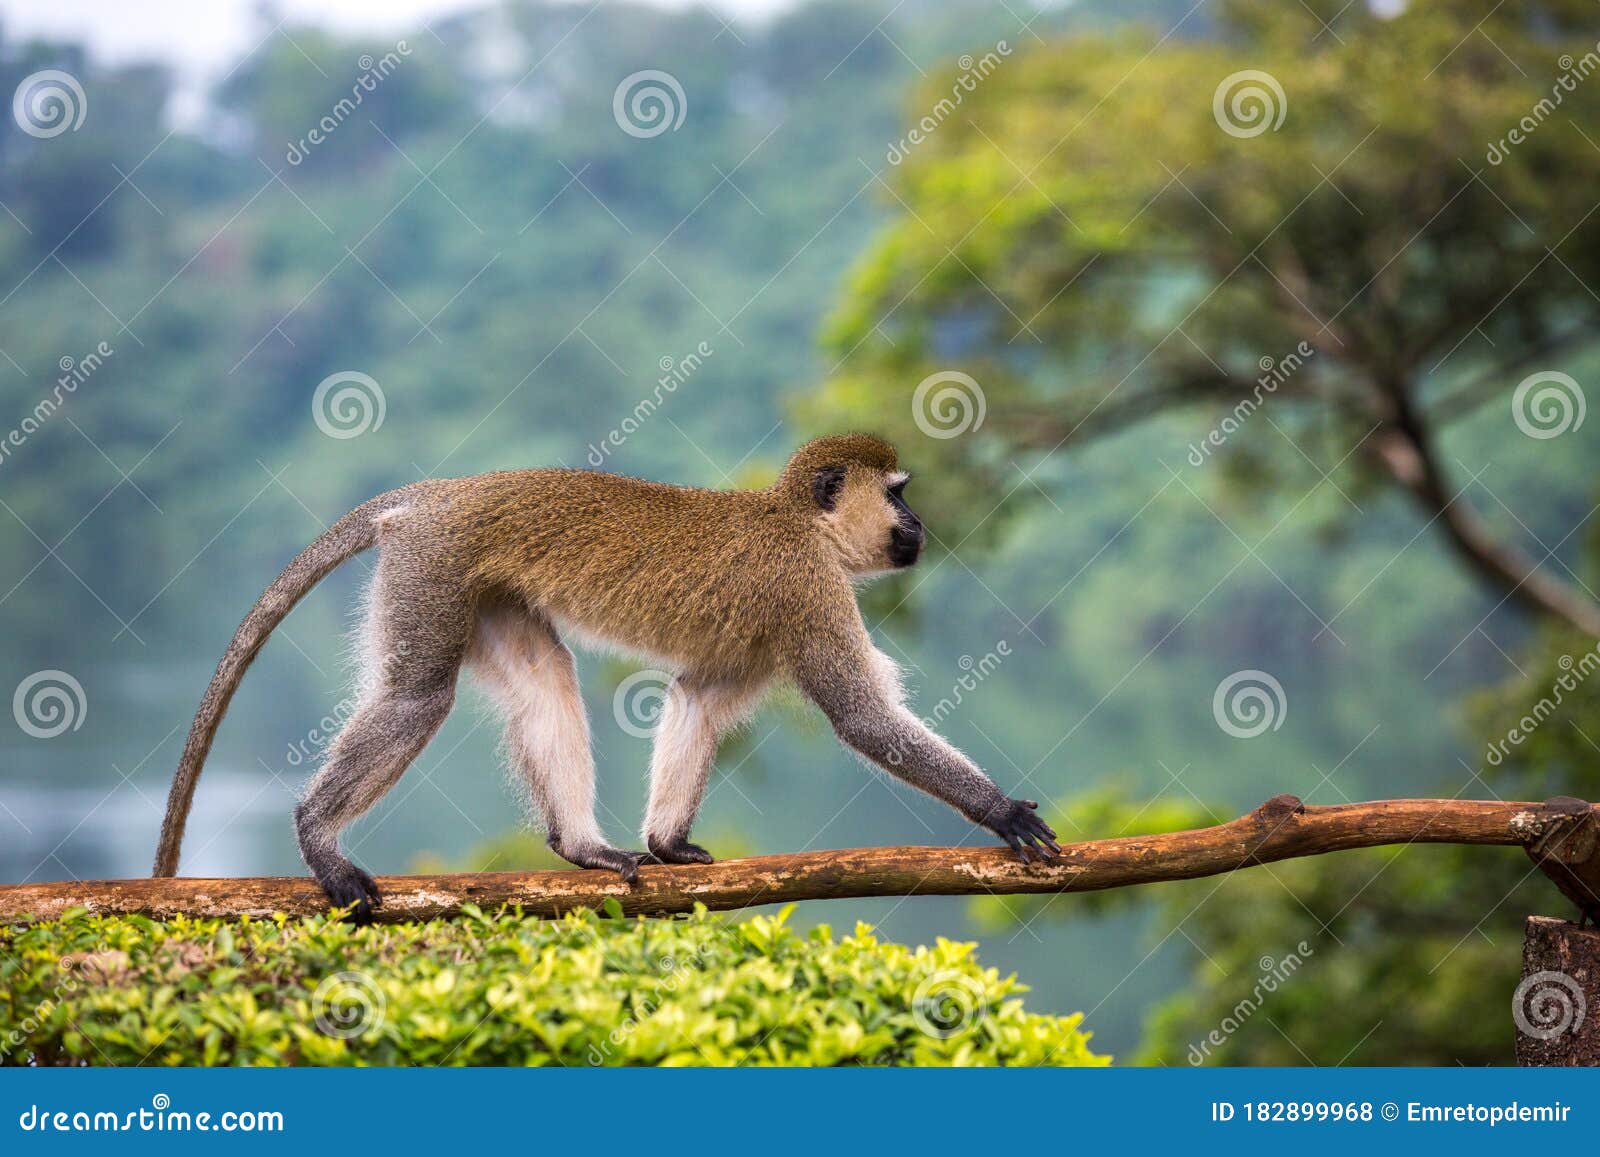 vervet monkey, chlorocebus pygerythrus in jinja, uganda.